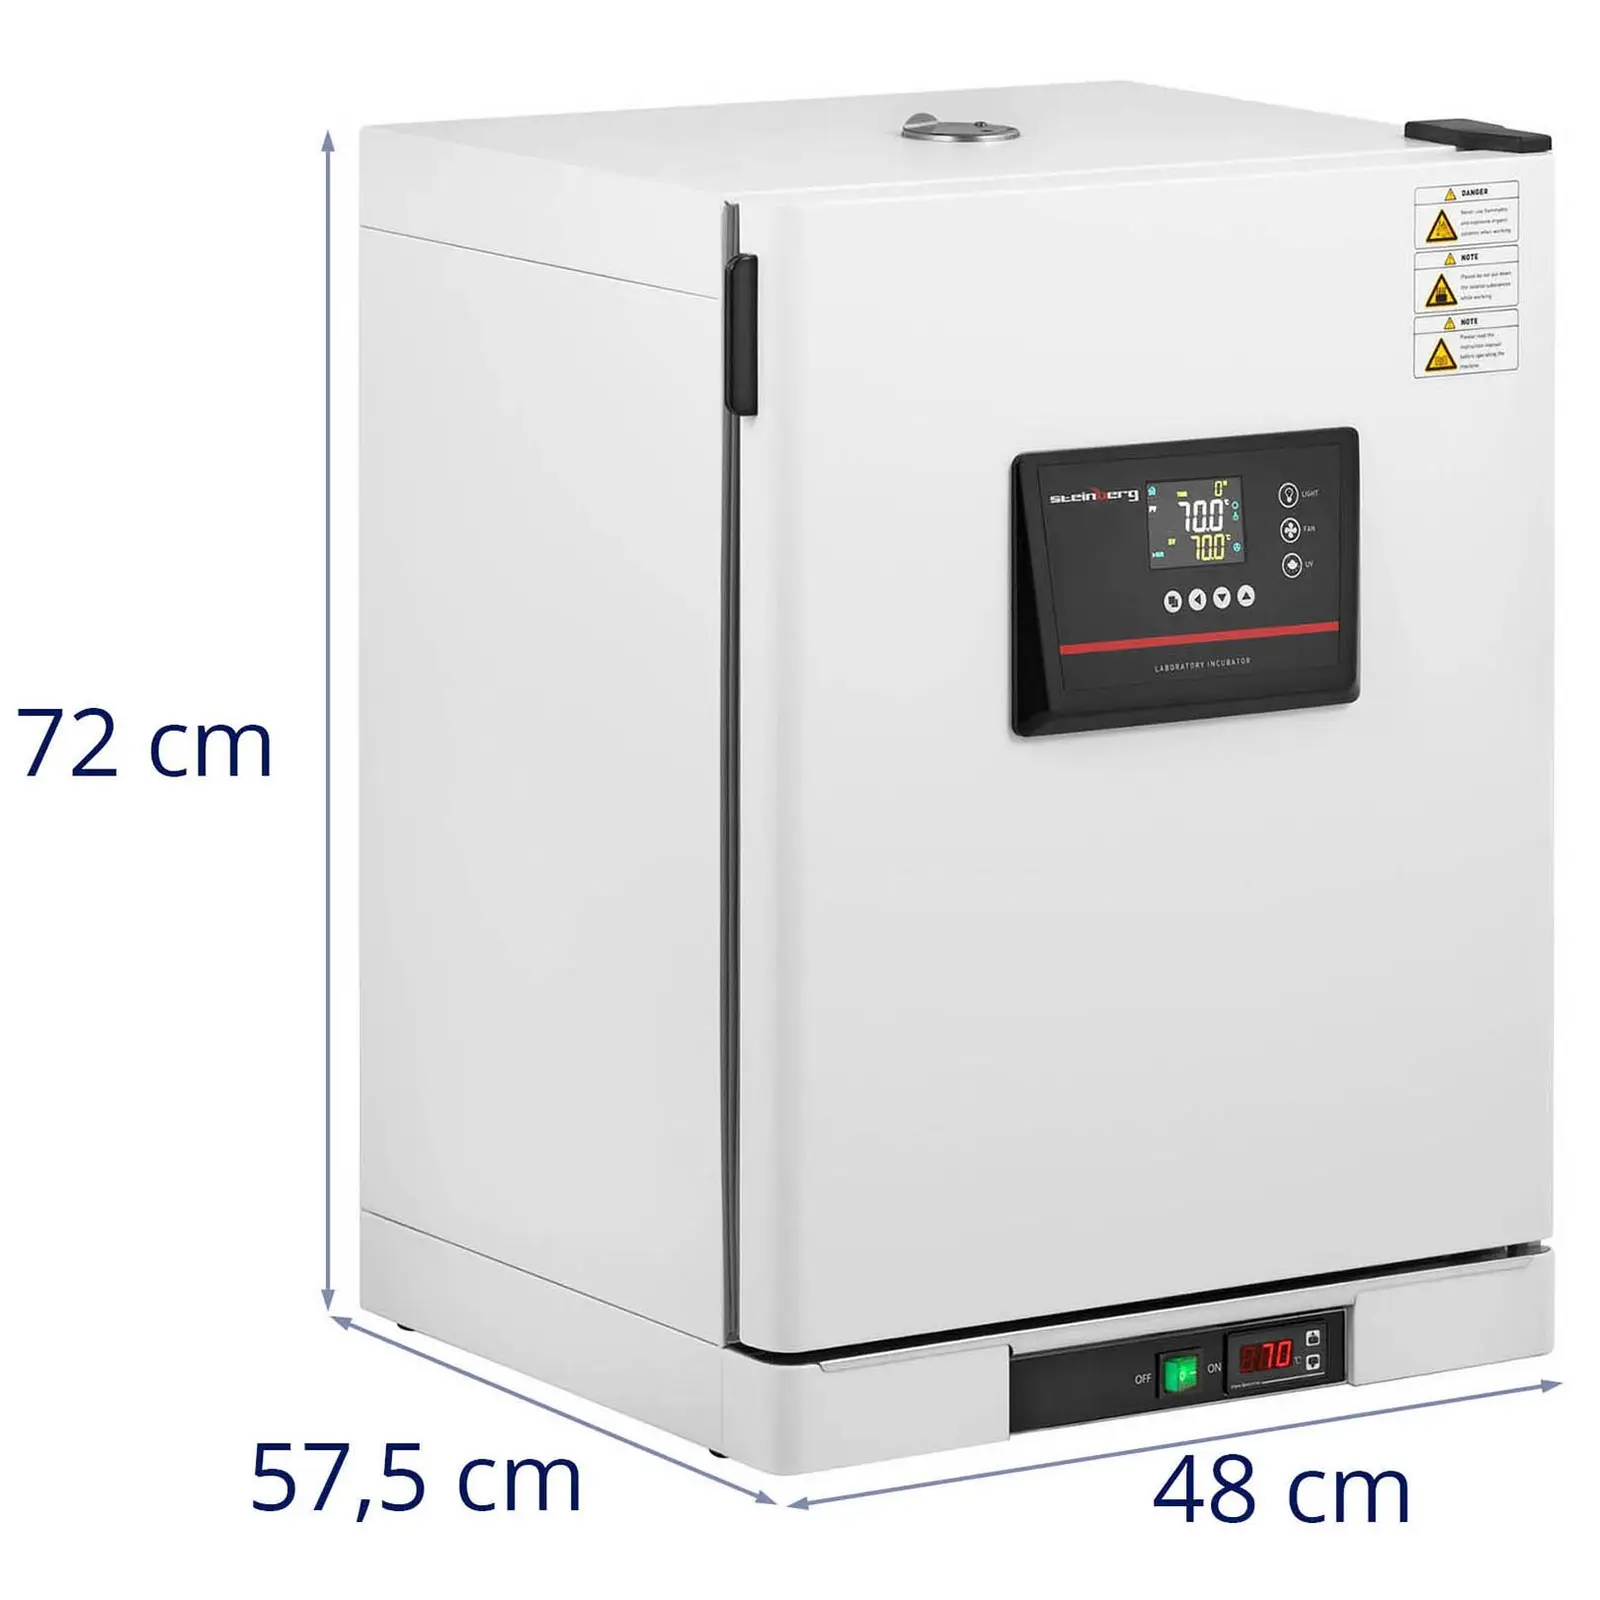 Inkubator laboratoryjny - do 70°C - 65 l - wymuszony obieg powietrza